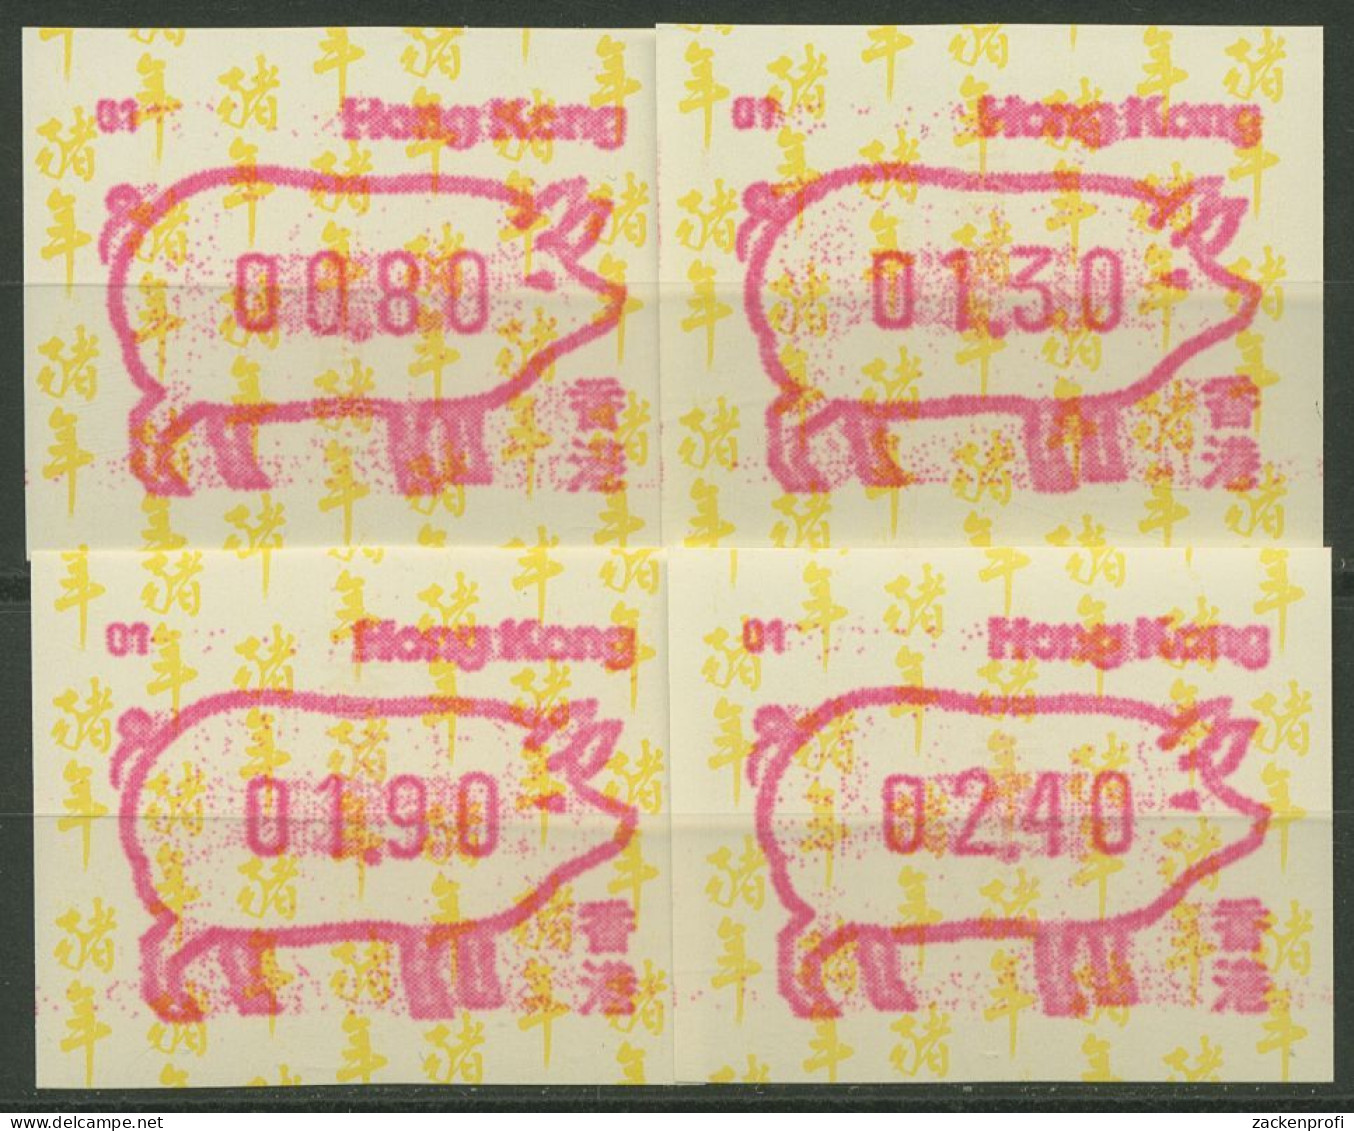 Hongkong 1995 Jahr Des Schweins Automatenmarke 10.1 S1 Automat 01 Postfrisch - Automatenmarken